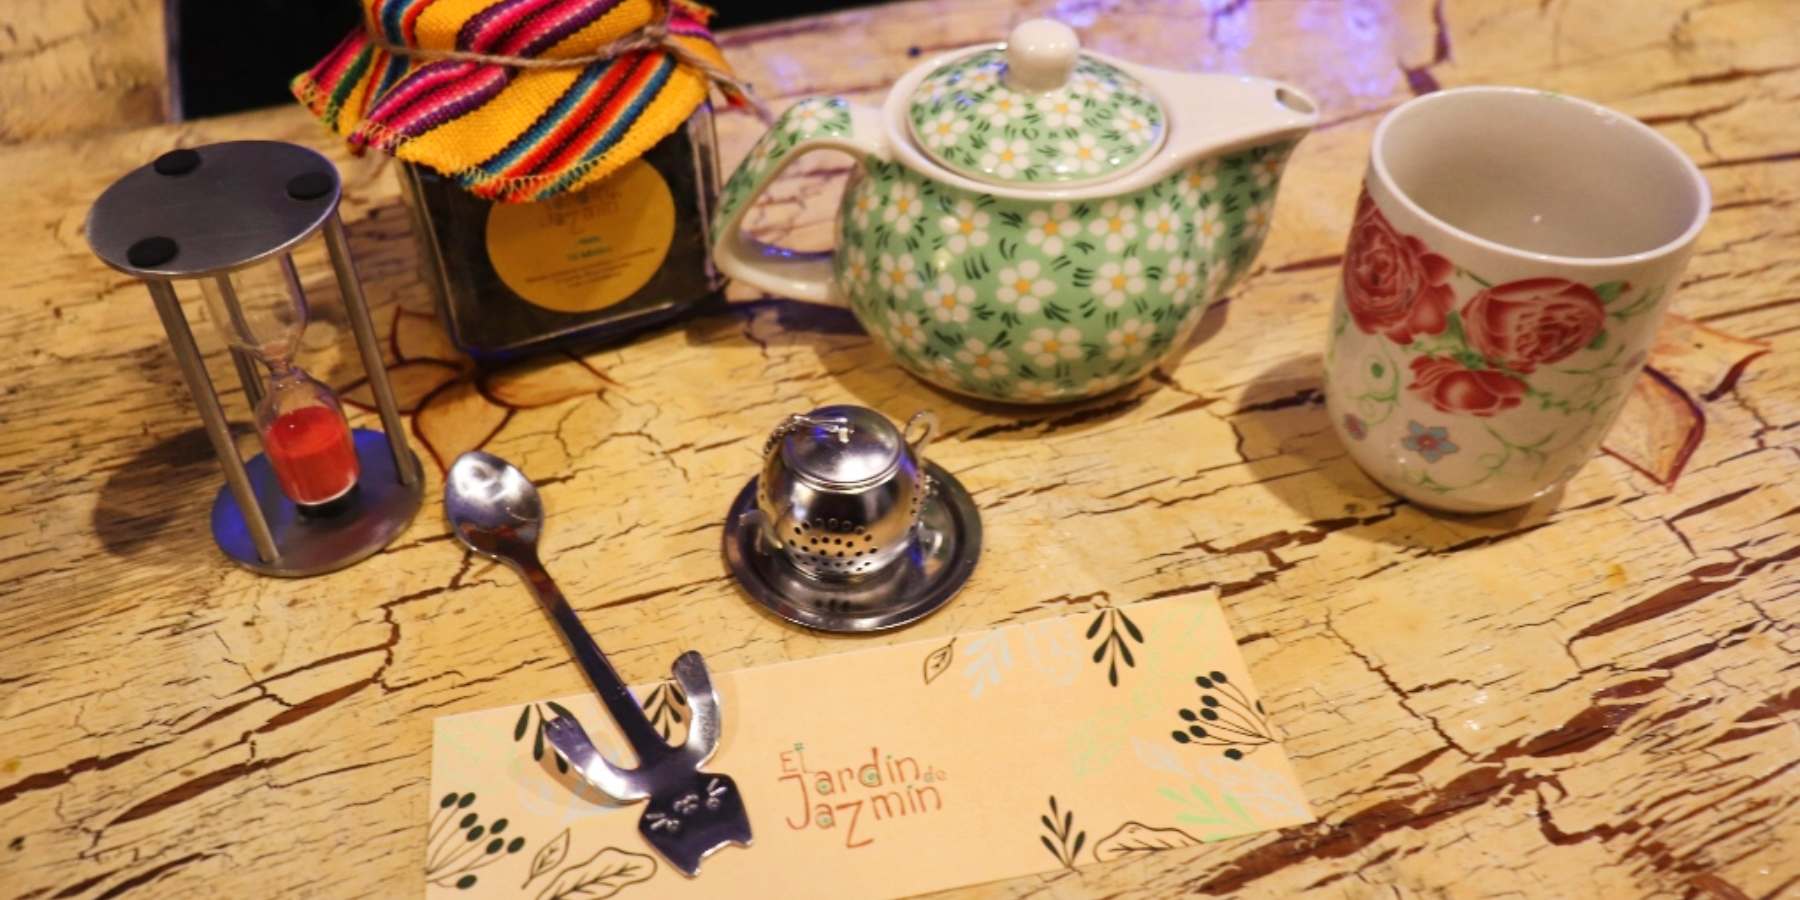 Restaurante El Jardín de Jazmín presenta singulares mezclas de tés en su carta